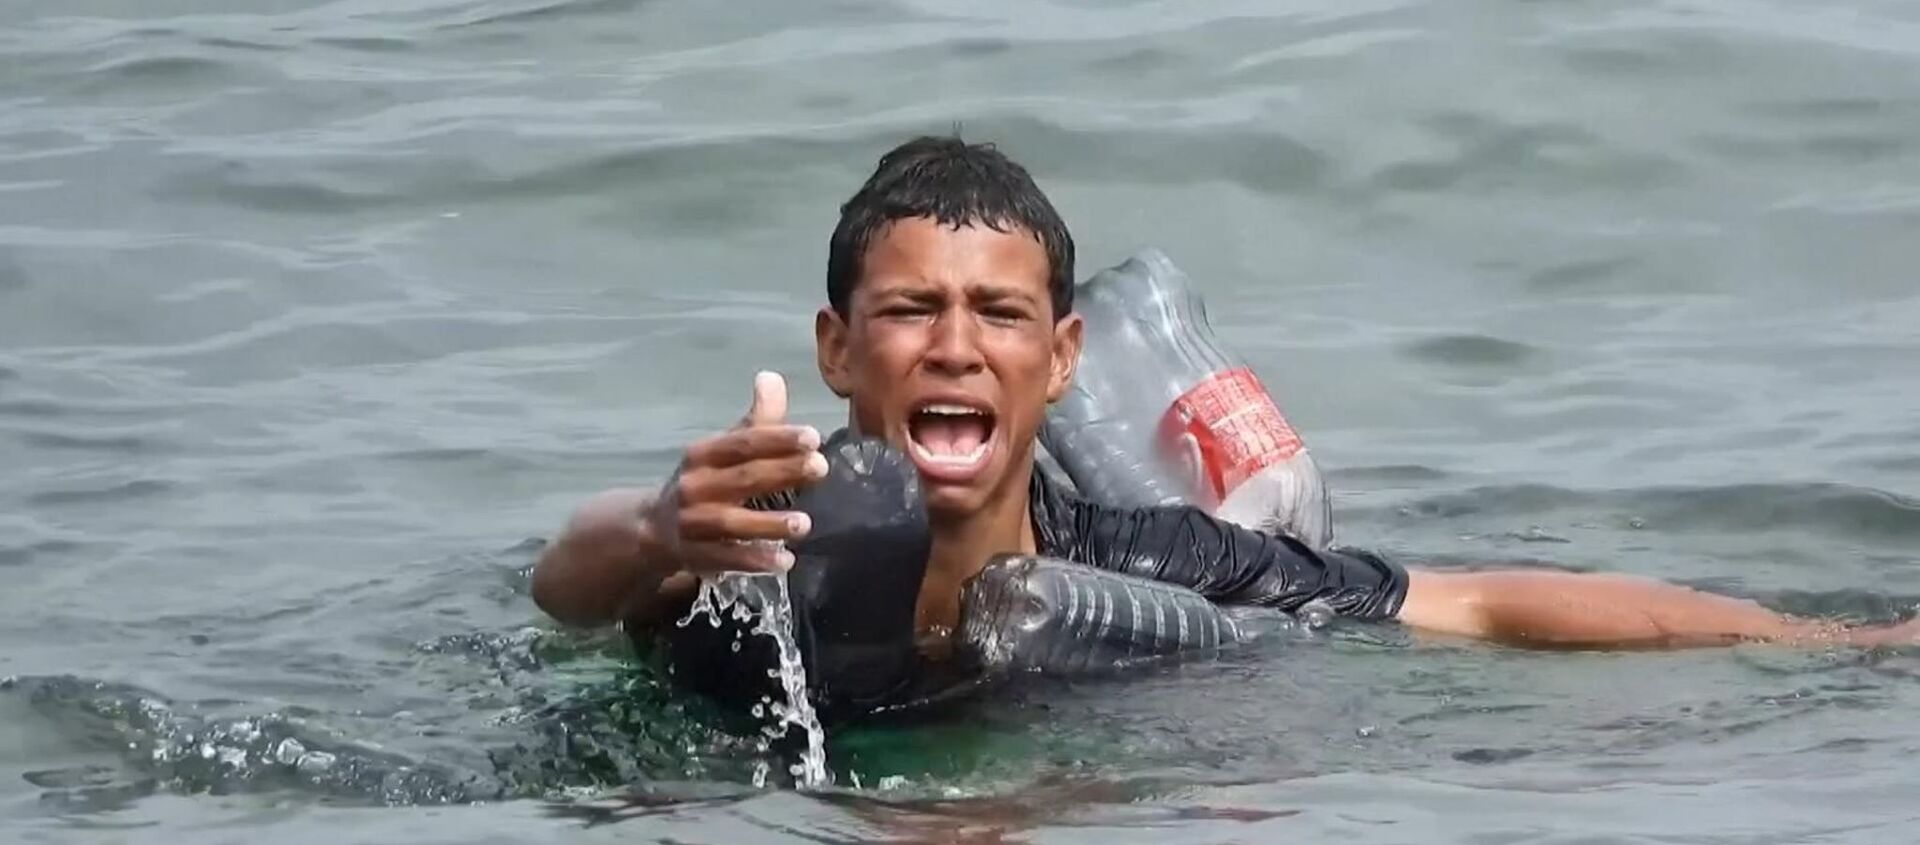 Plastik şişelerle yüzerek Fas'tan İspanya kıyılarına ulaşan mülteci çocuk yakalandı - Sputnik Türkiye, 1920, 20.05.2021